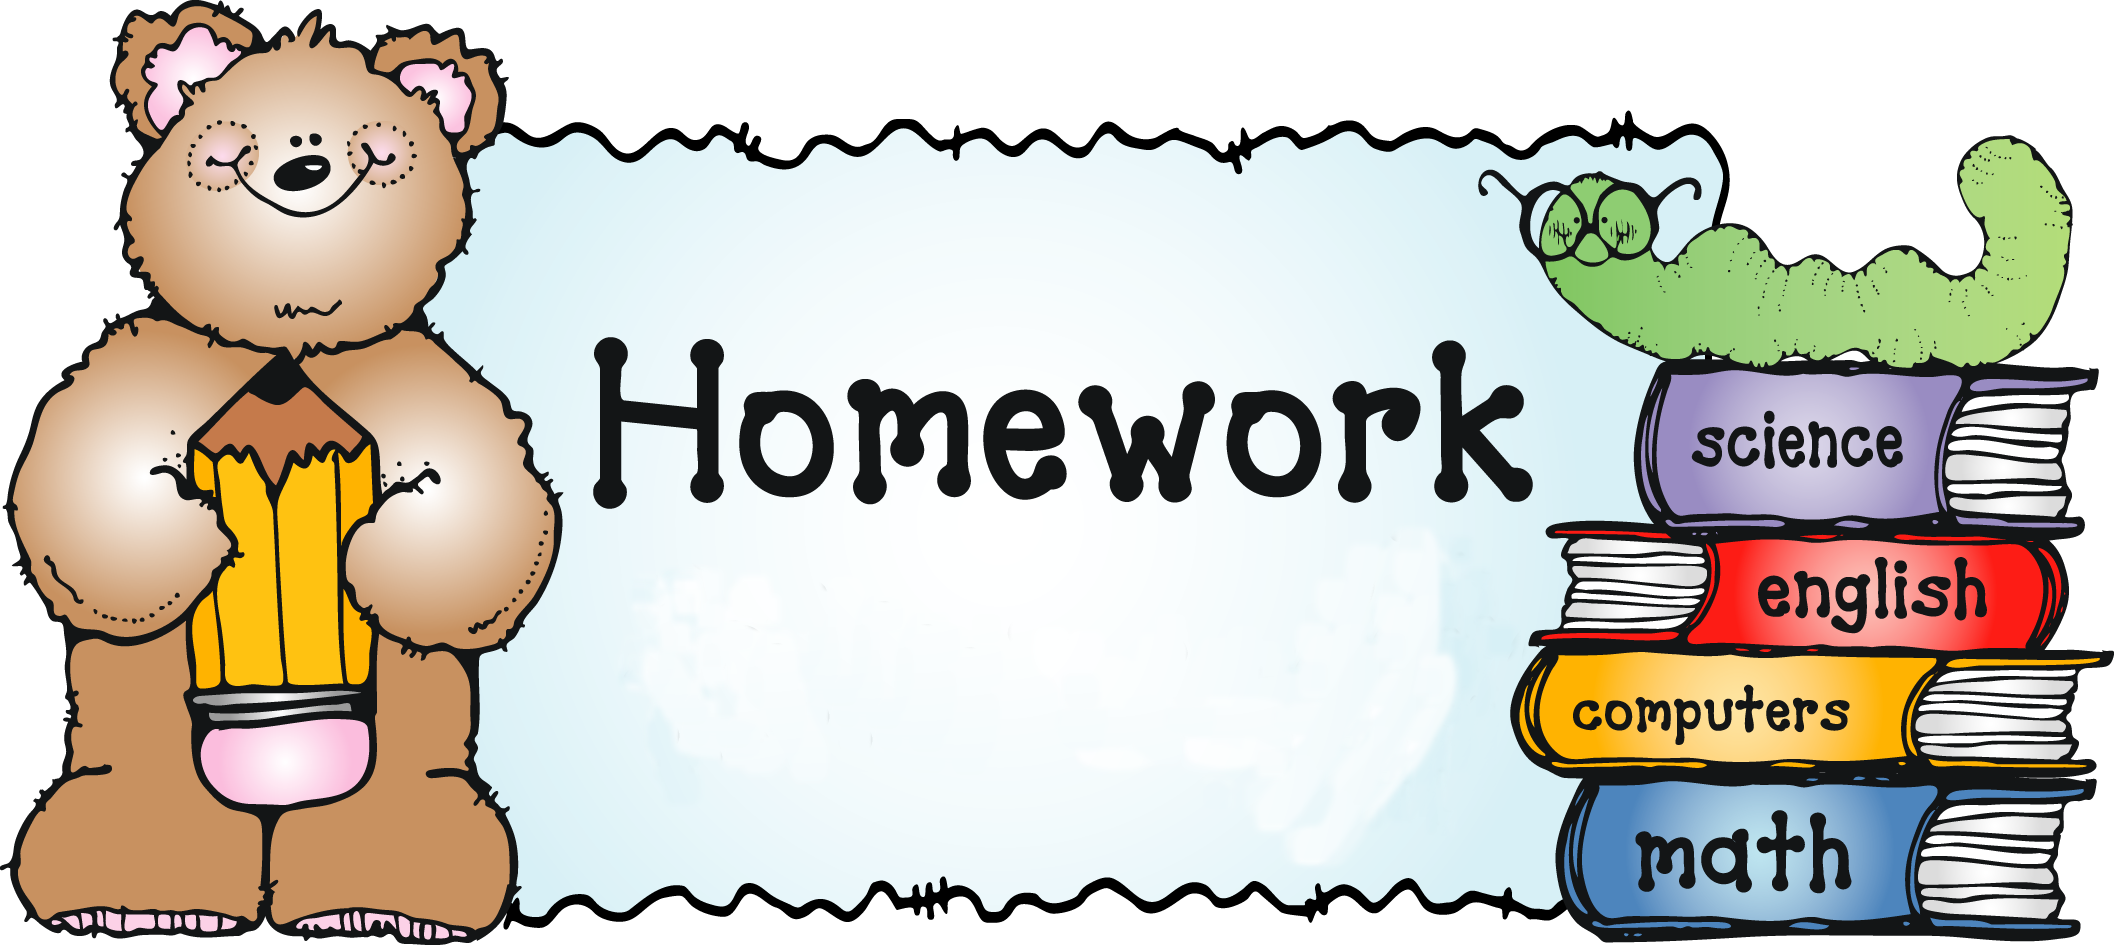 Рад на английском языке. Homework. Домашнее задание на английском. Homework картинка. Рисунки для презентации по английскому языку.